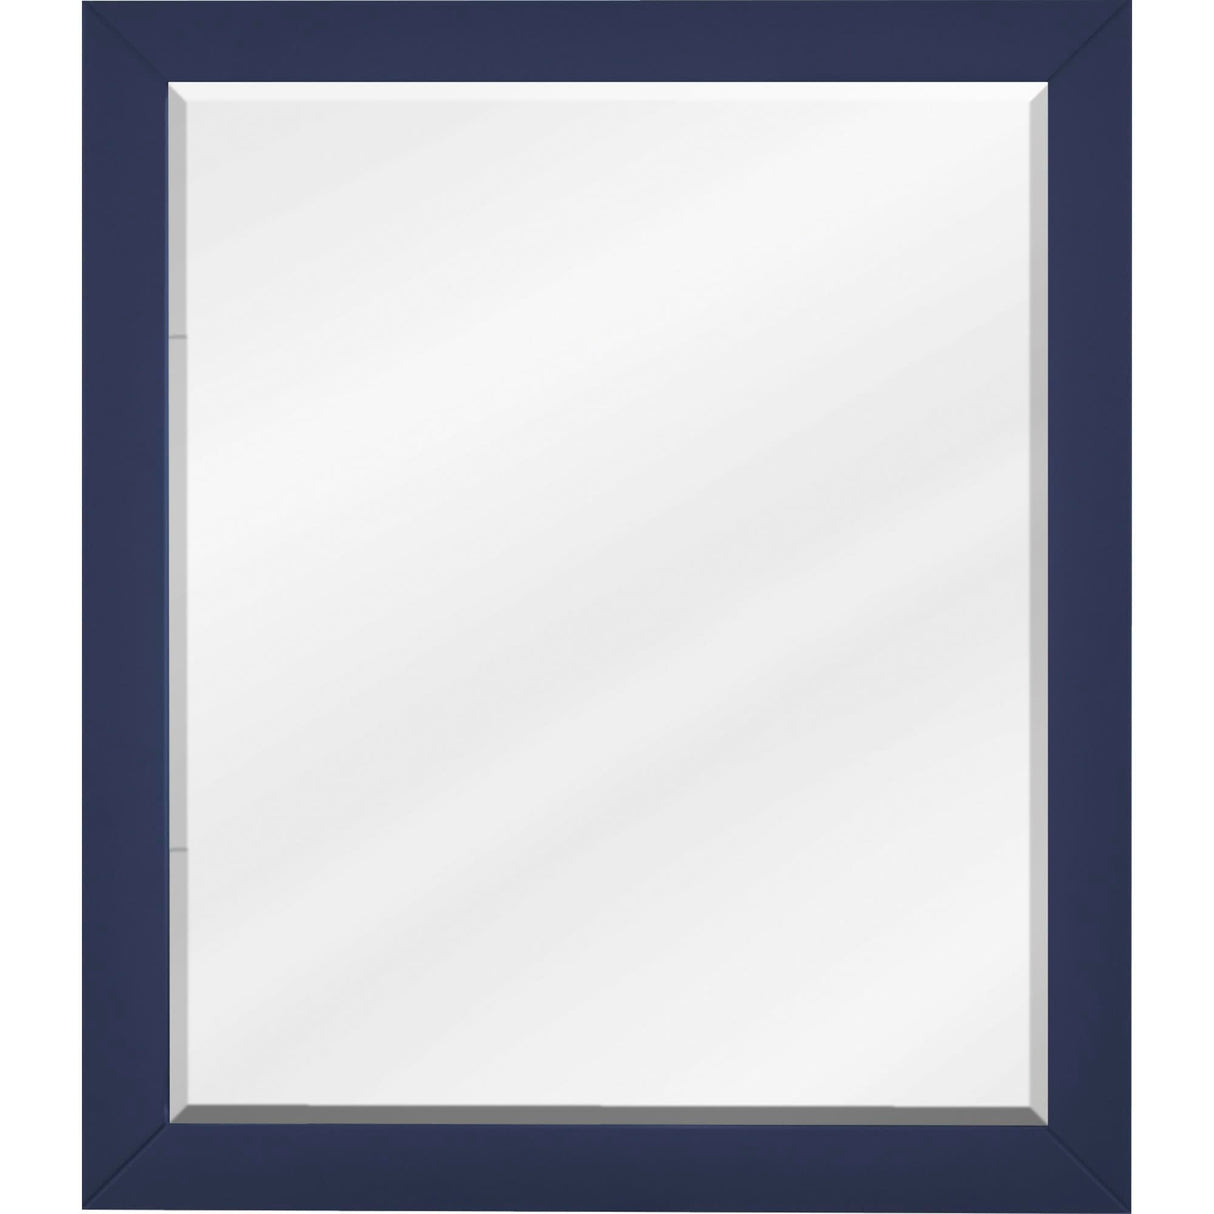 Jeffrey Alexander MIR2CAD-24-BL 24 W x 1" D x 28" H Hale Blue Cade mirror